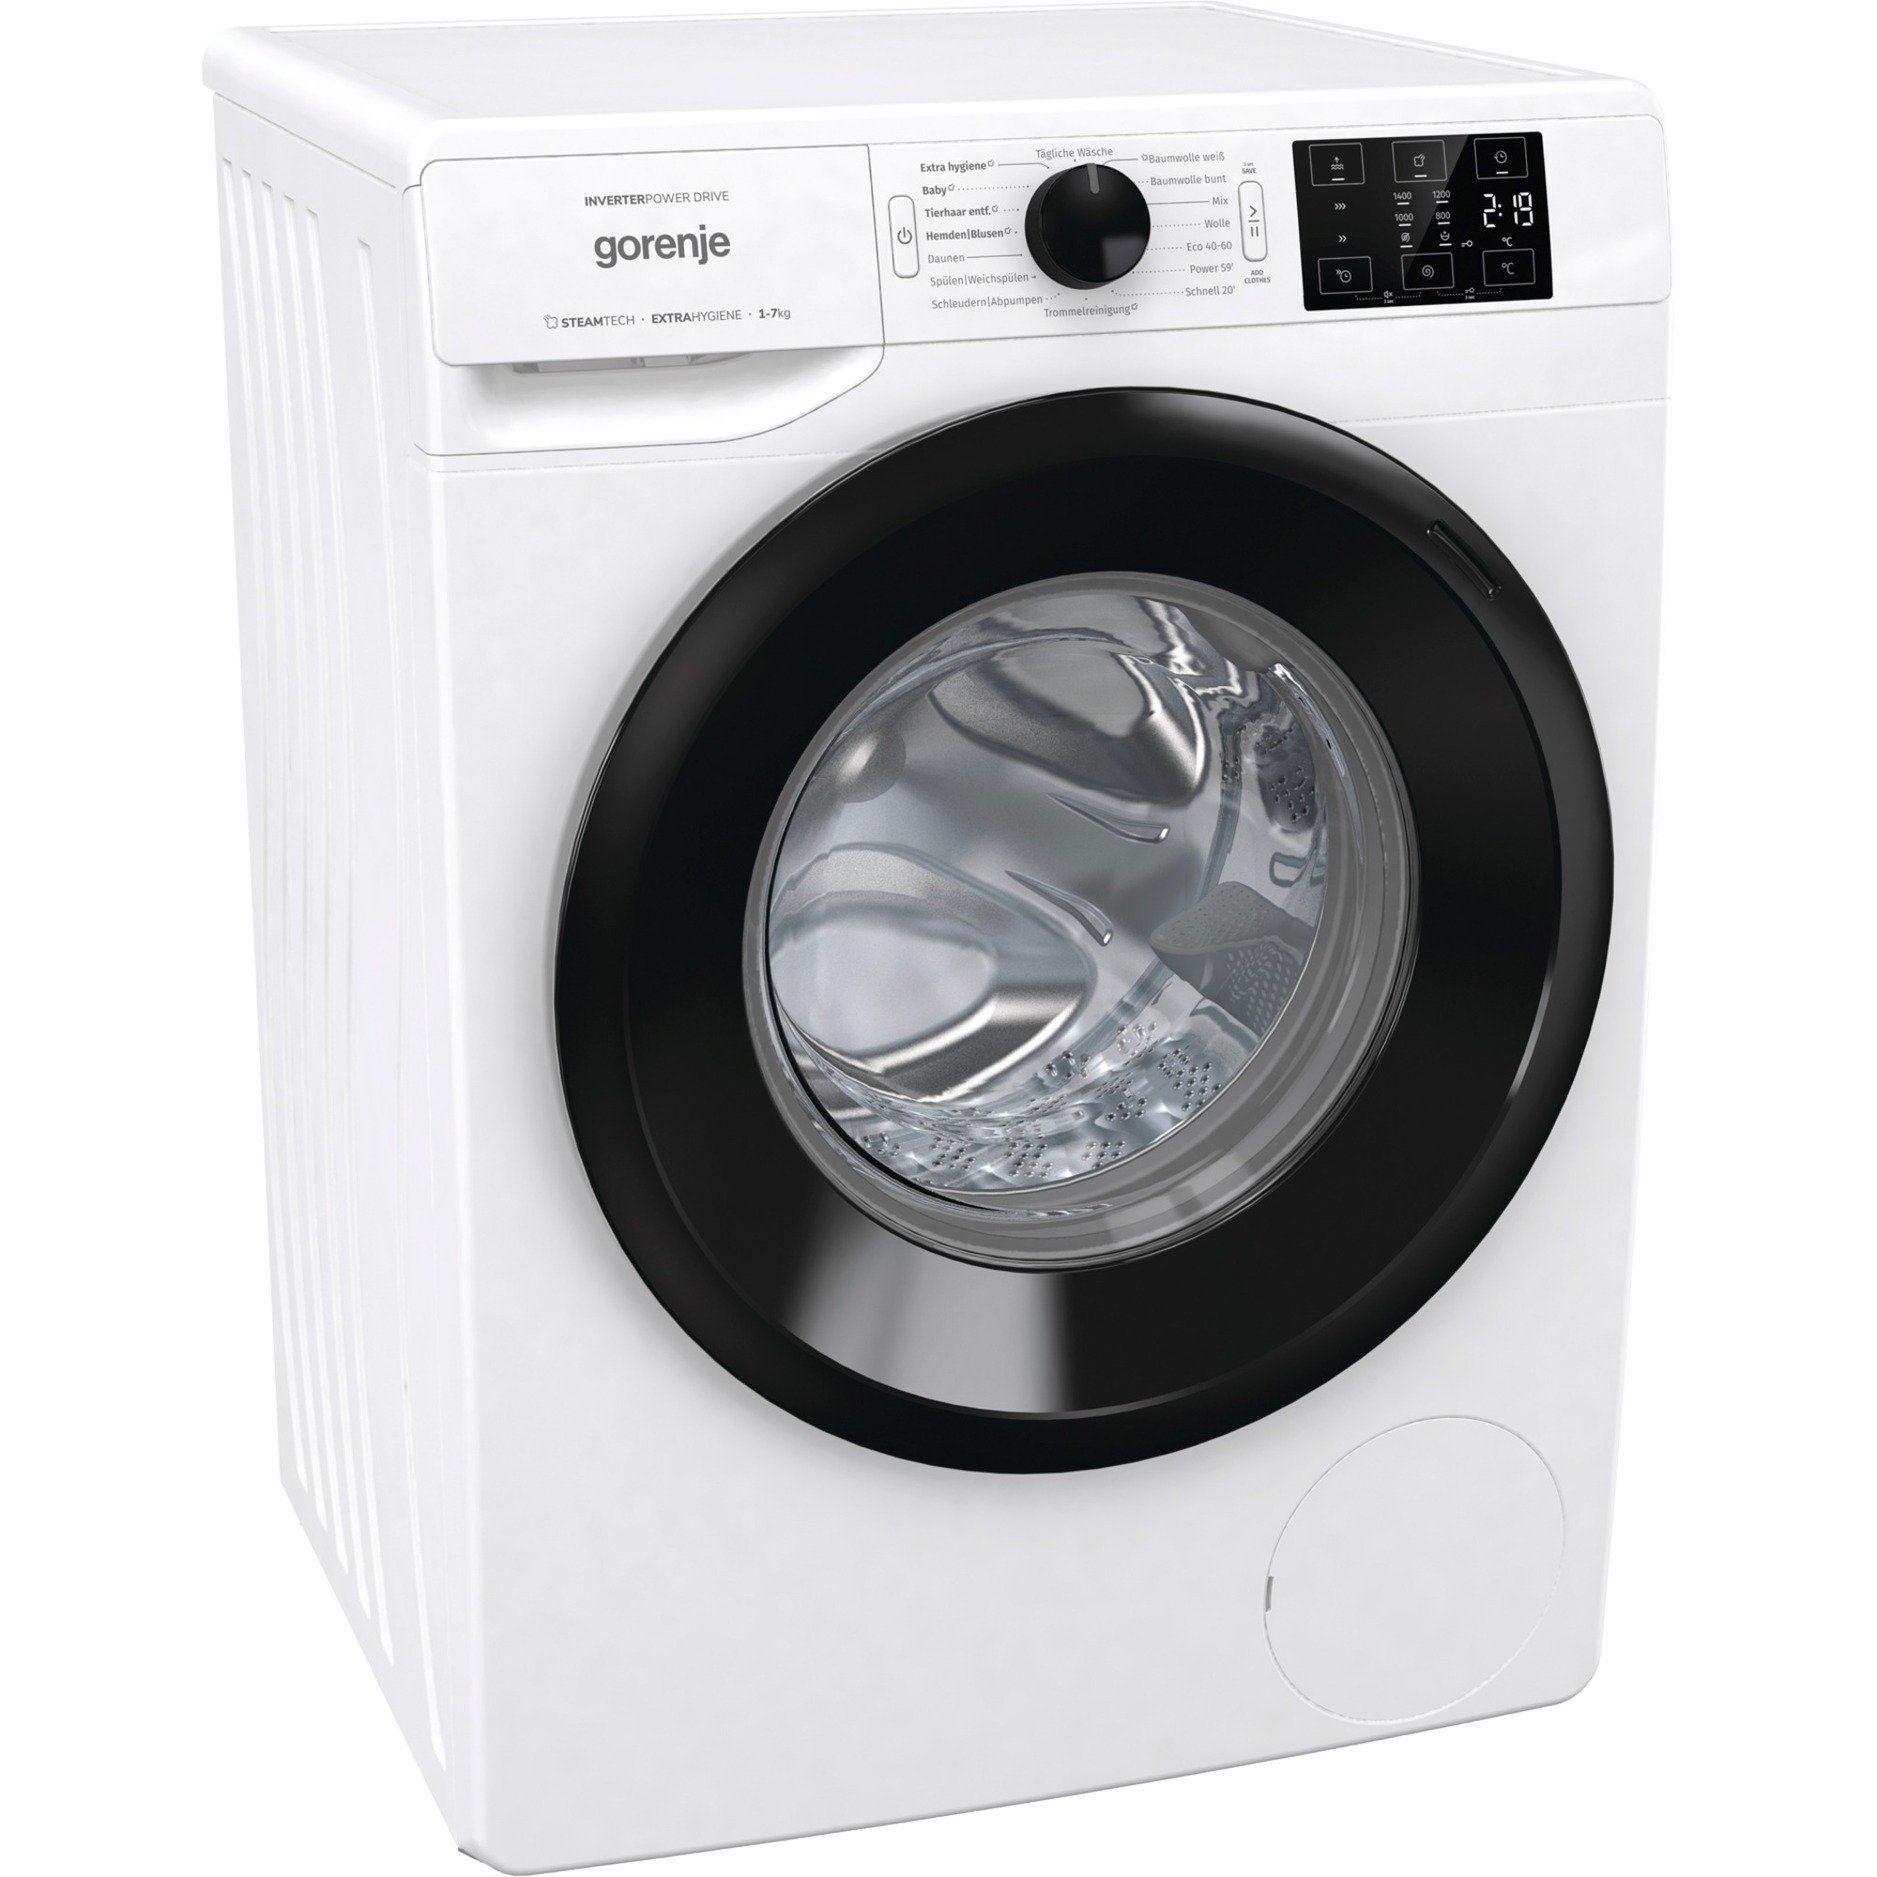 WNEI74APS, Waschmaschine von Gorenje